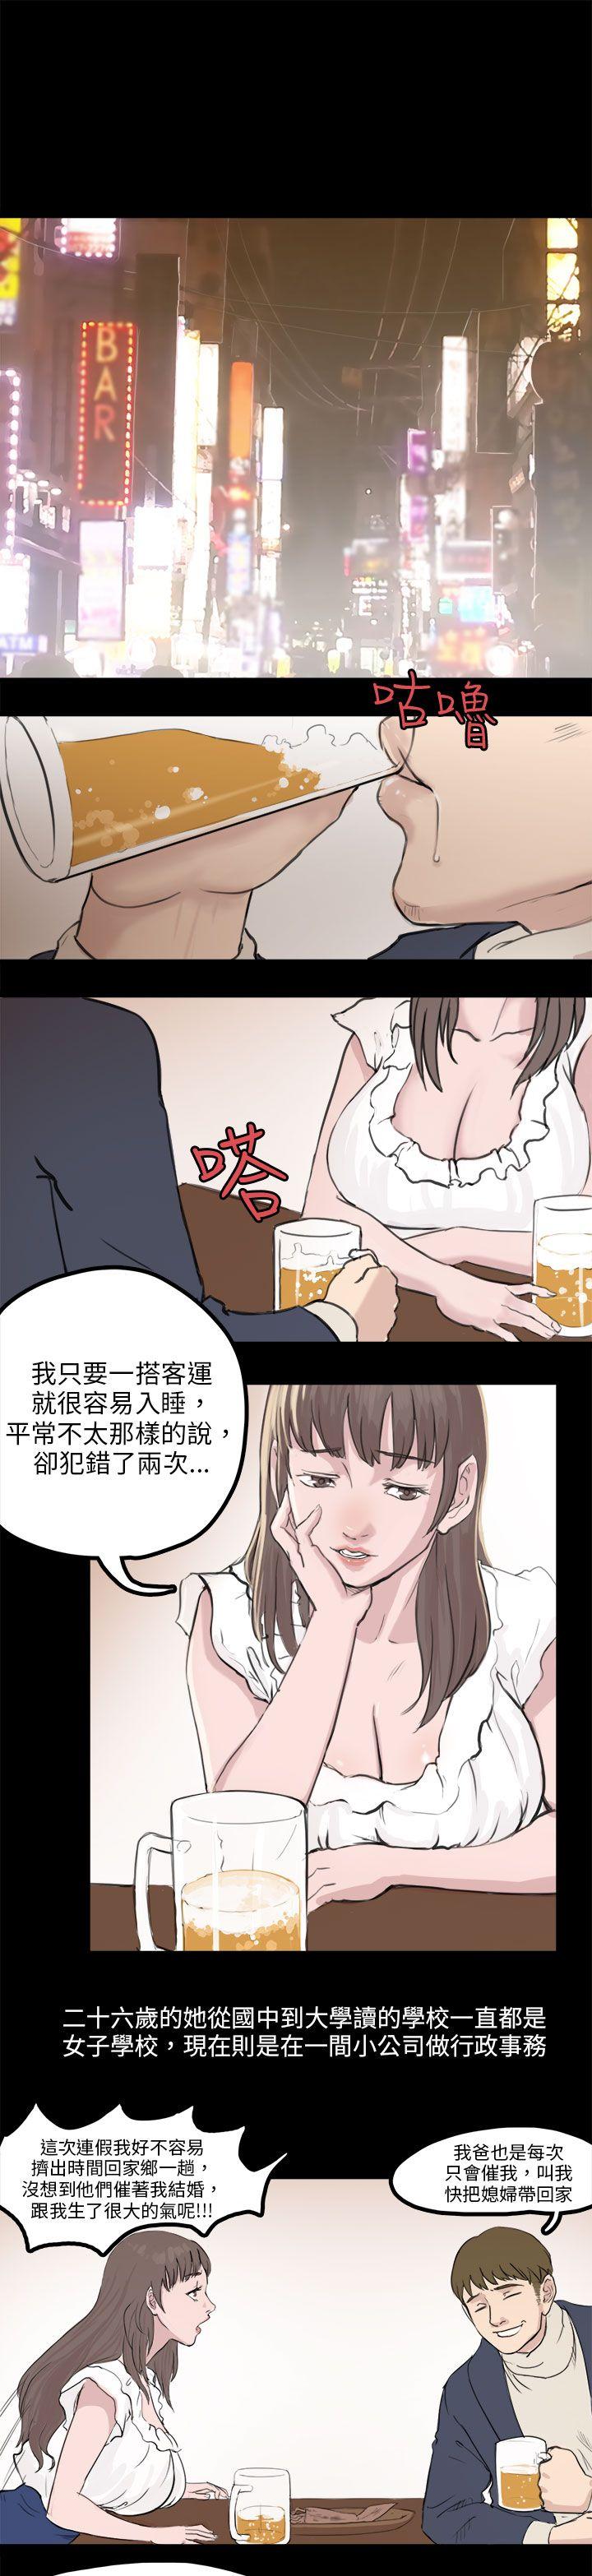 韩国污漫画 秘密Story 转运站里遇见的女人(下) 1